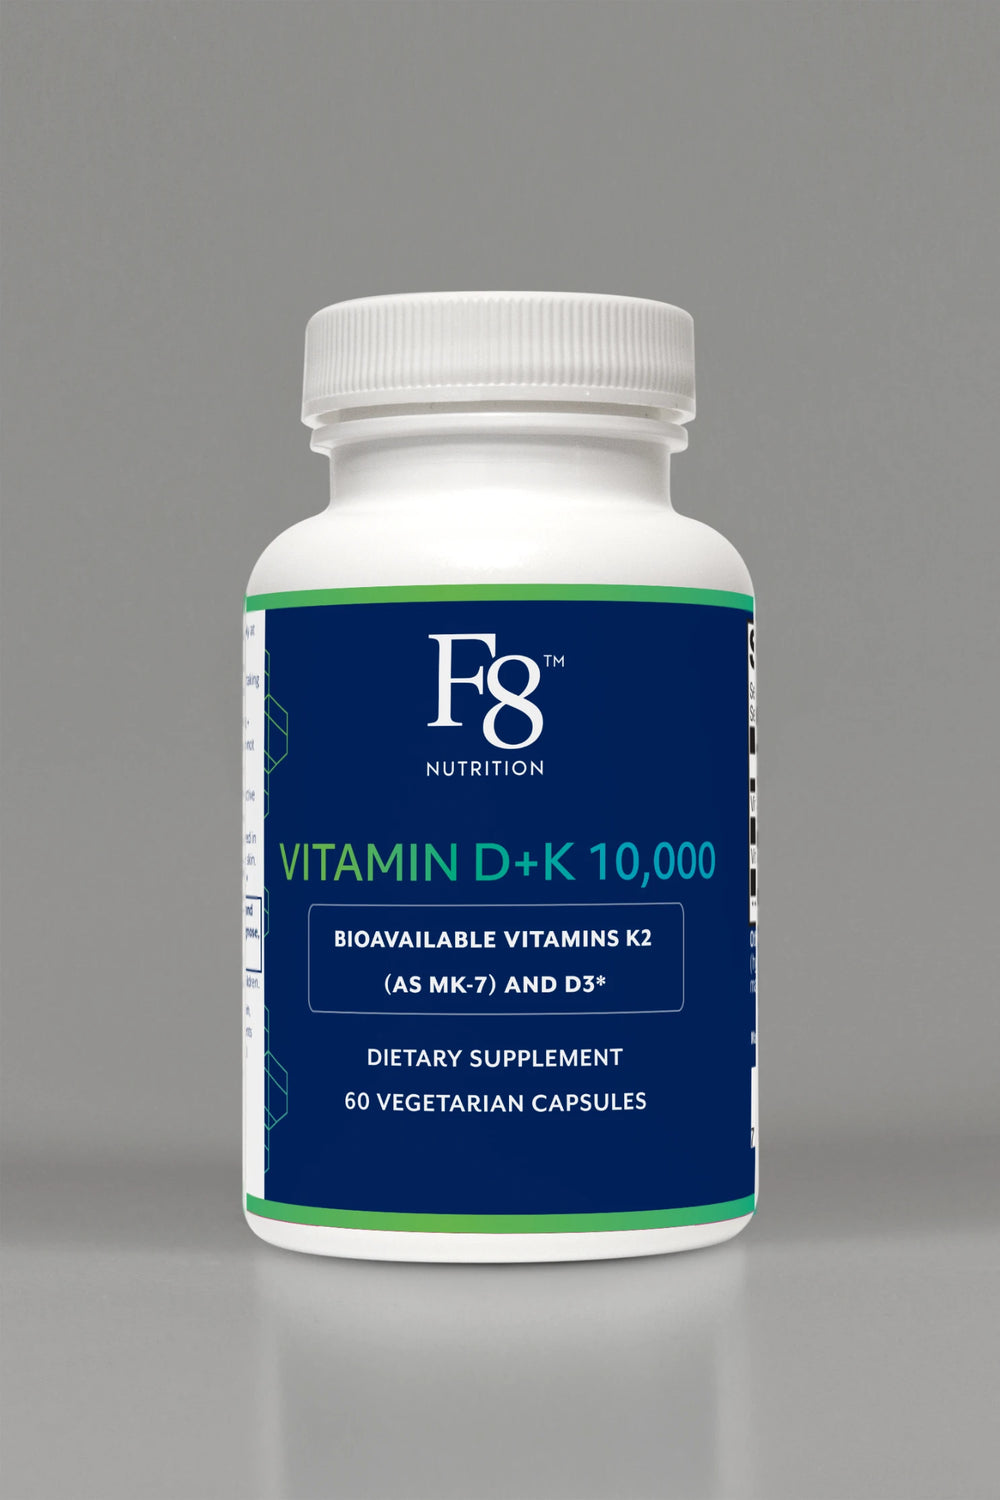 Vitamin D+K 10,000